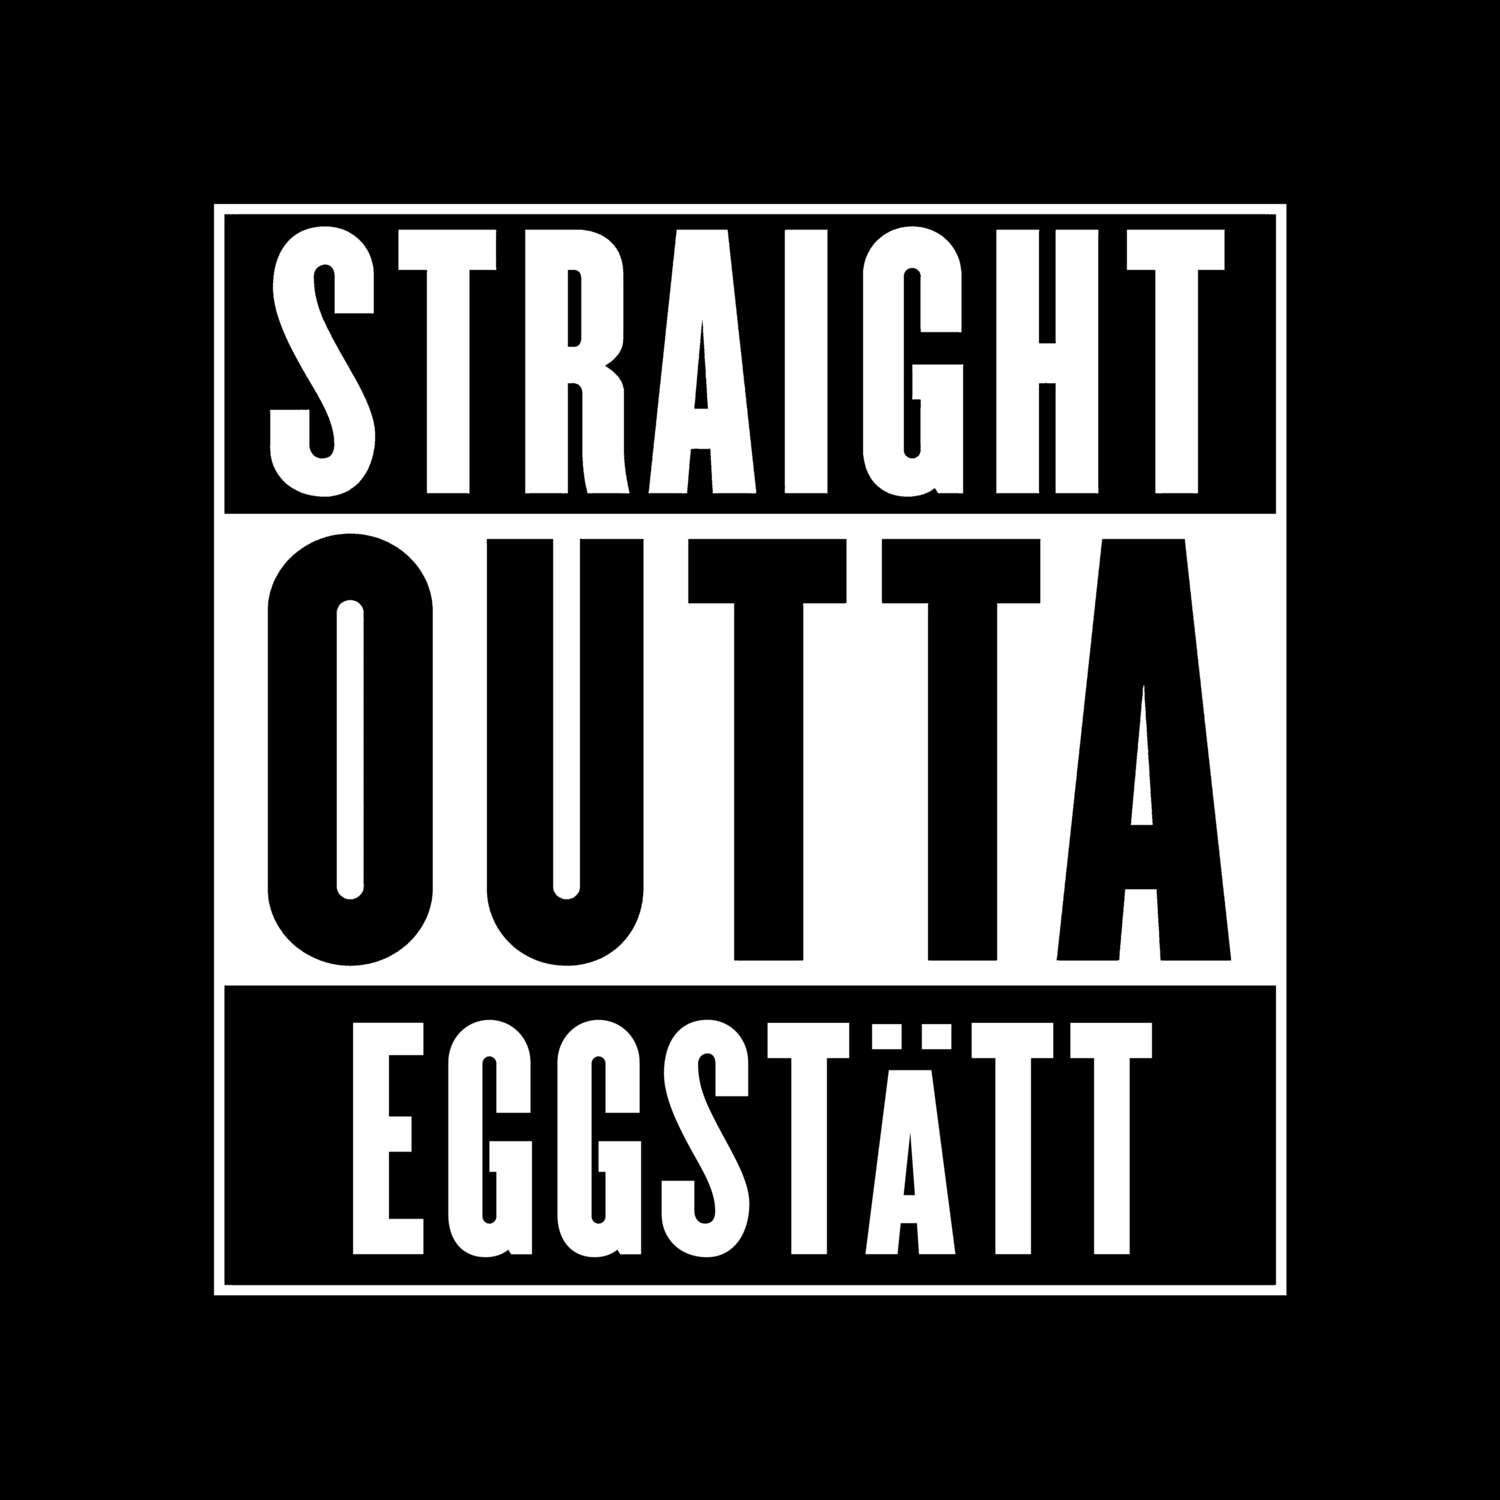 Eggstätt T-Shirt »Straight Outta«